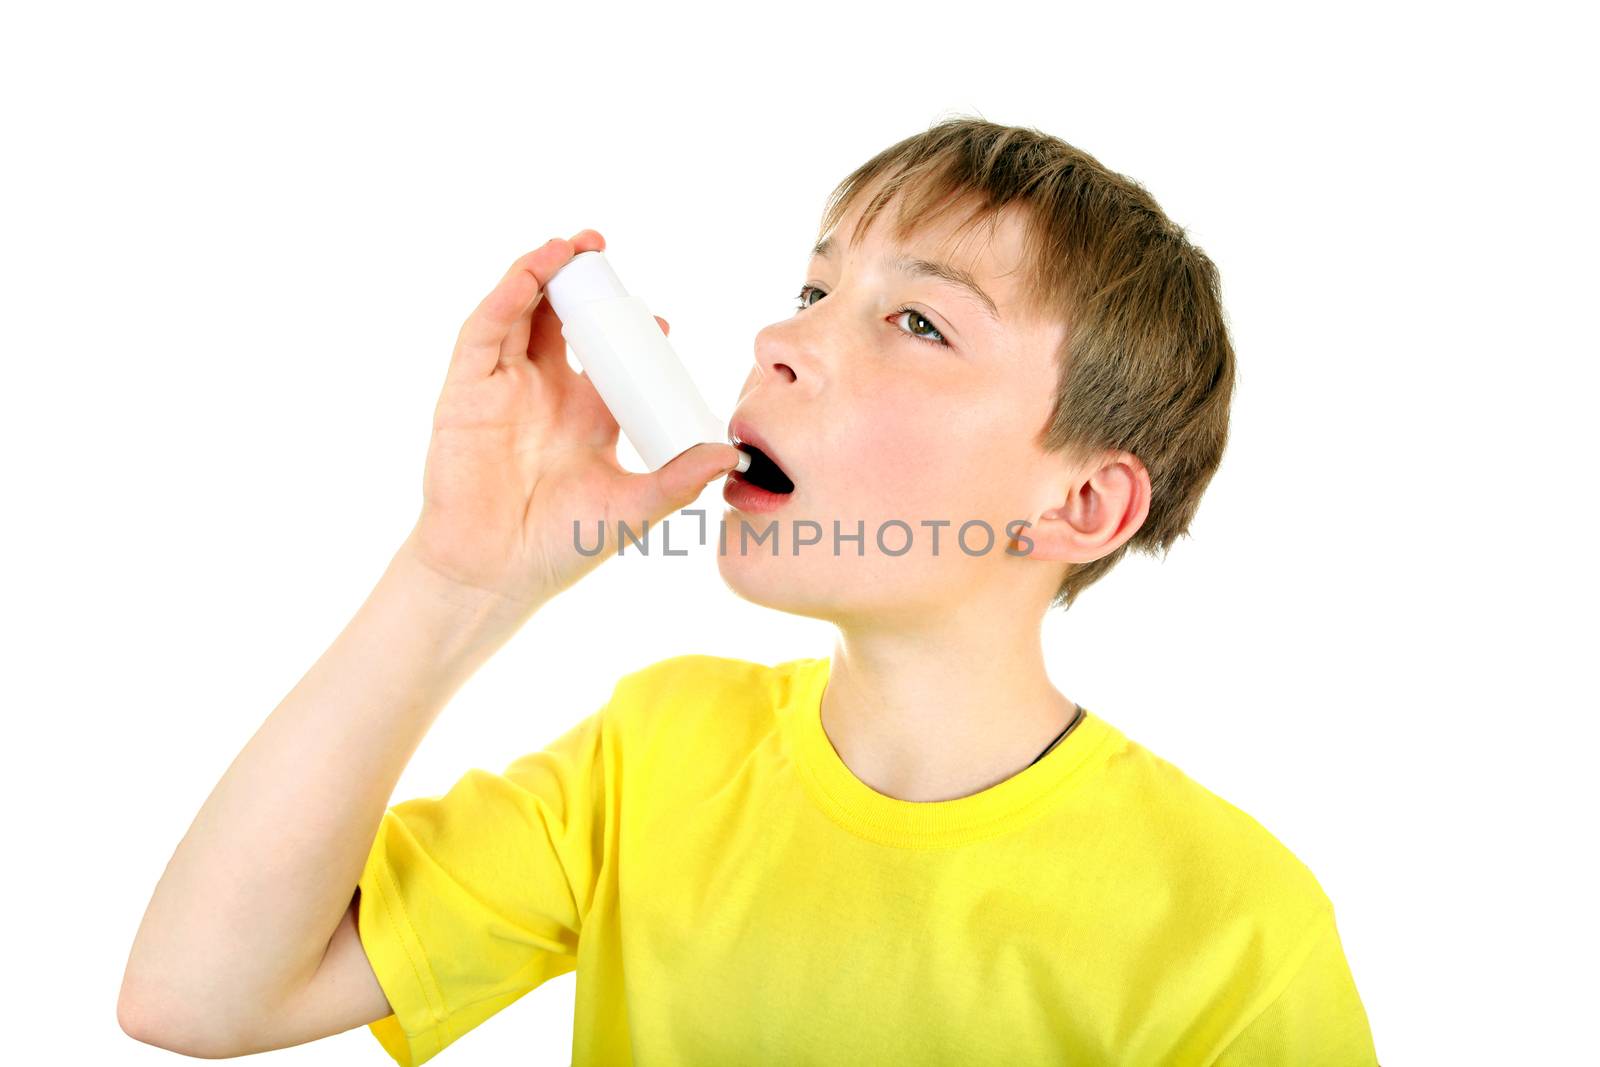 Kid with Inhaler by sabphoto